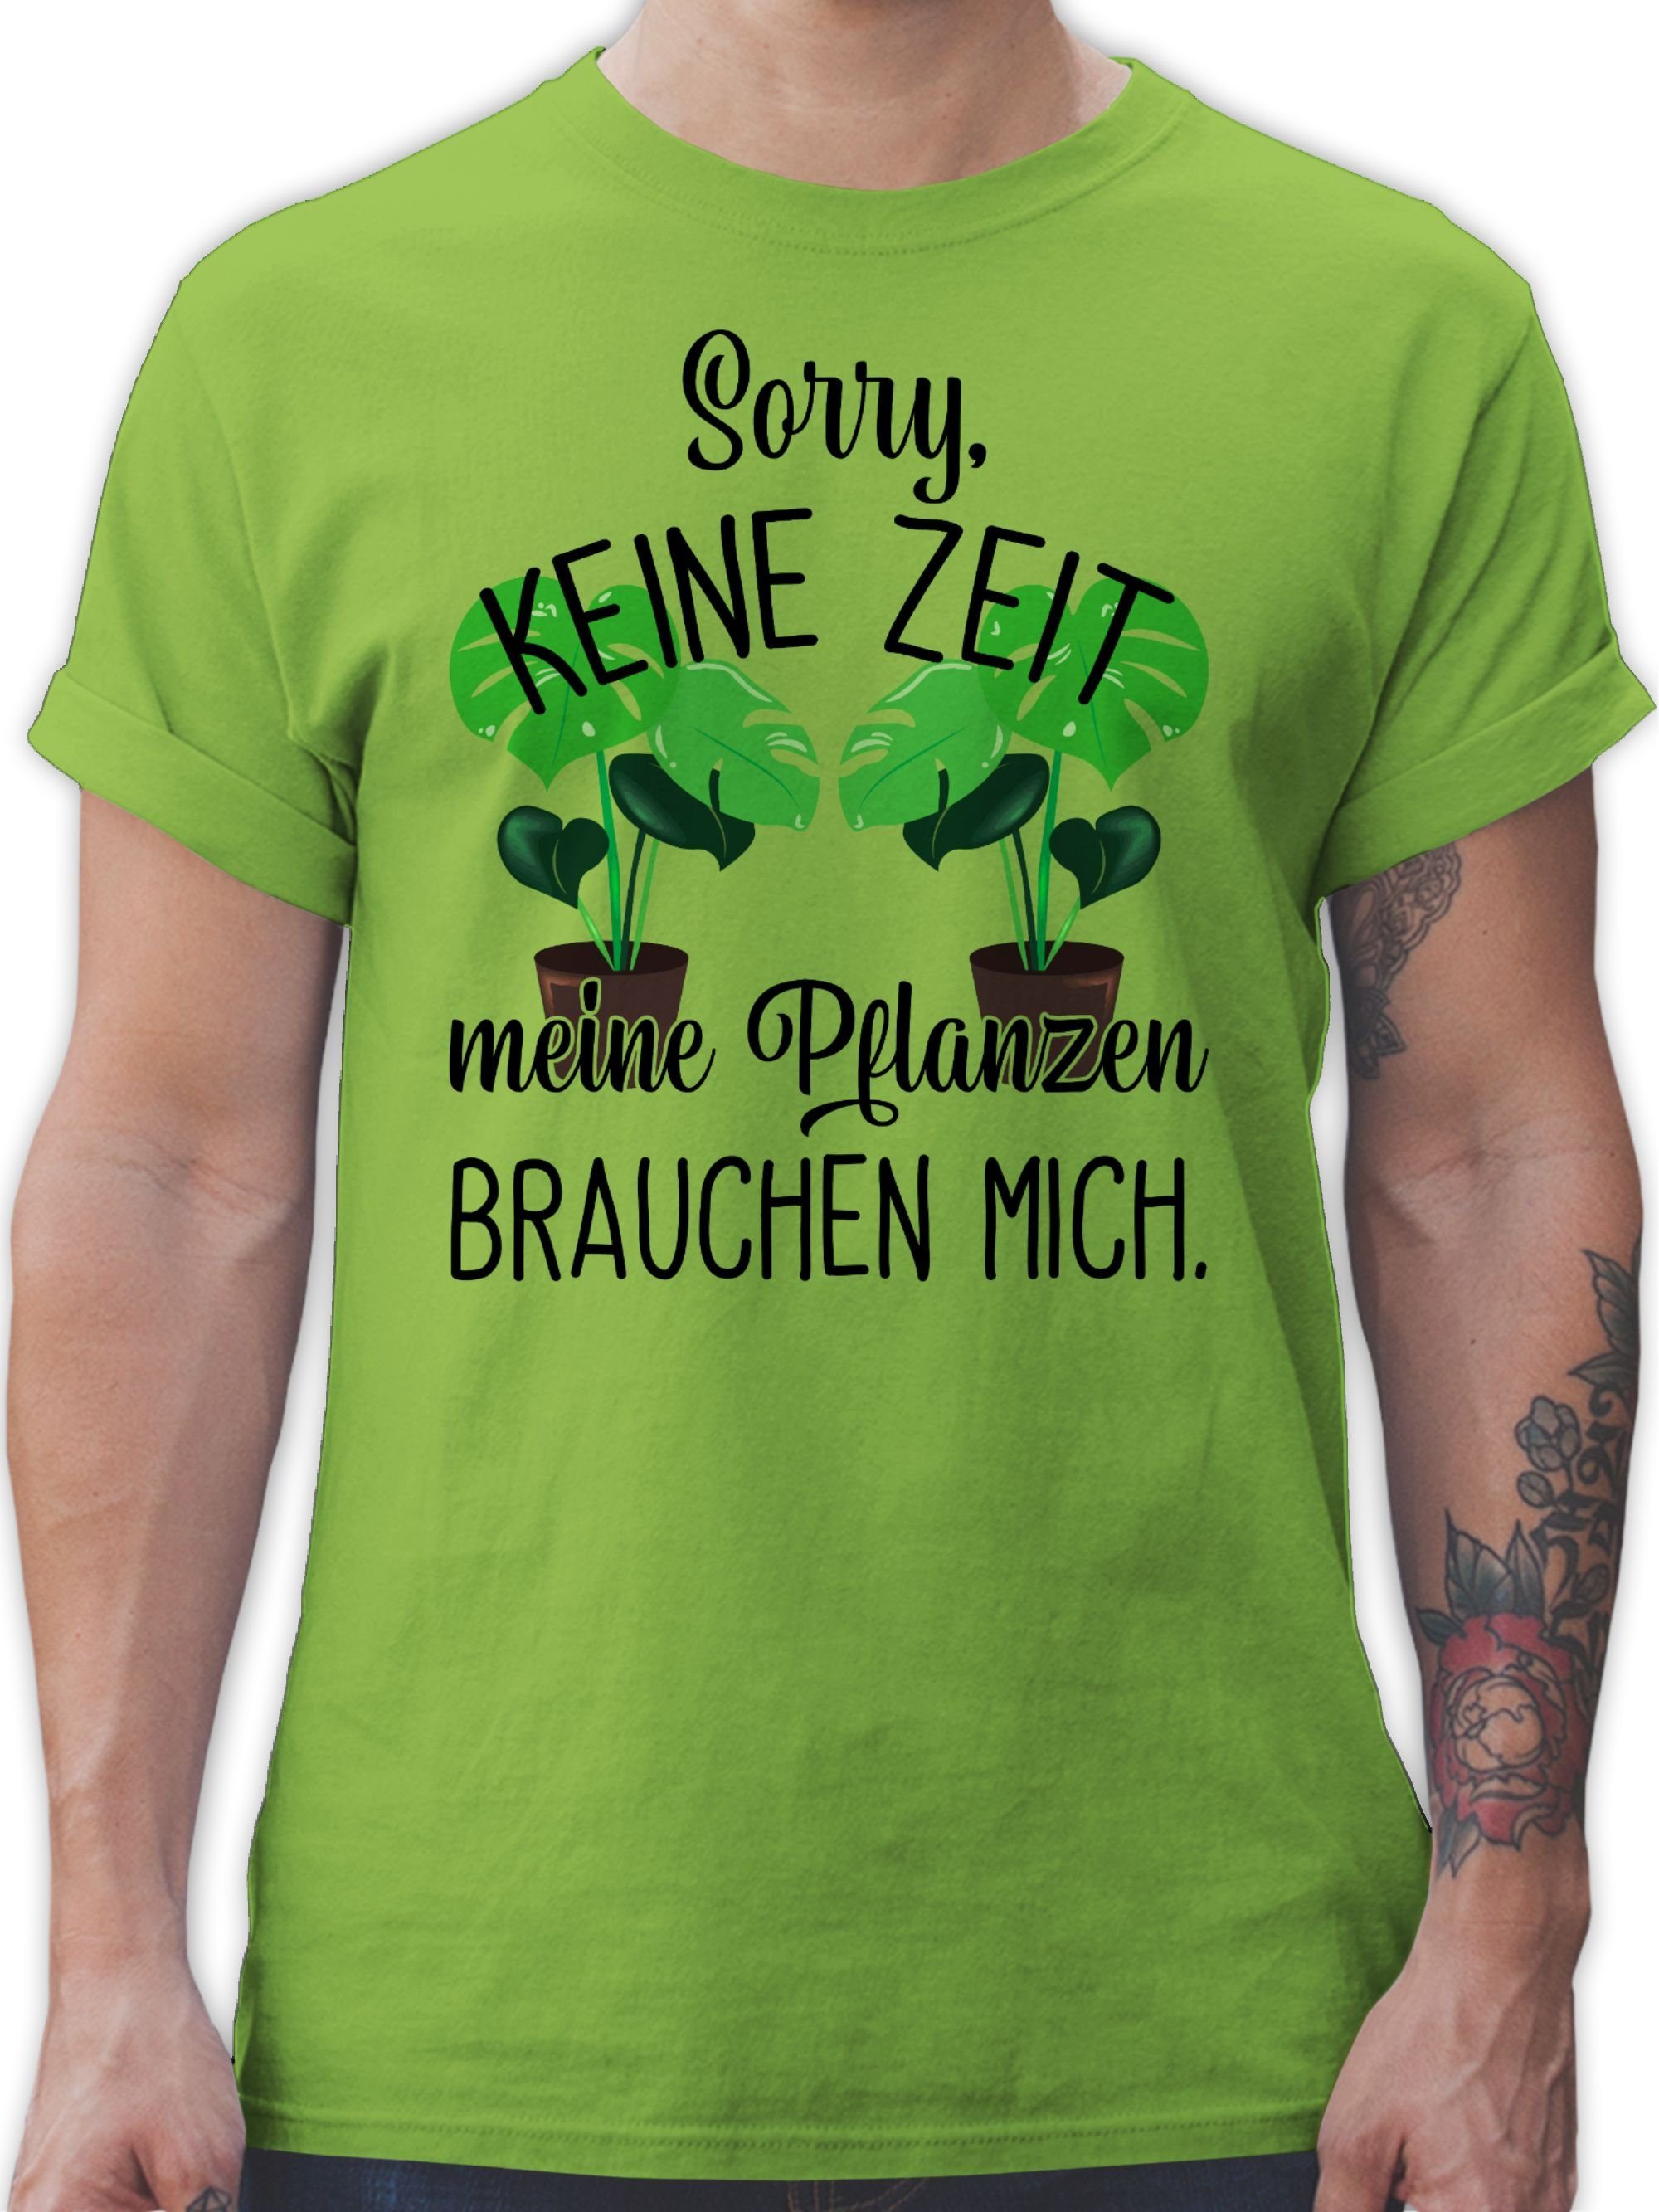 Übersee-Parallelimport von Originalprodukten Shirtracer T-Shirt Keine Zeit meine brauchen Hellgrün Pflanzen 3 Outfit Hobby mich